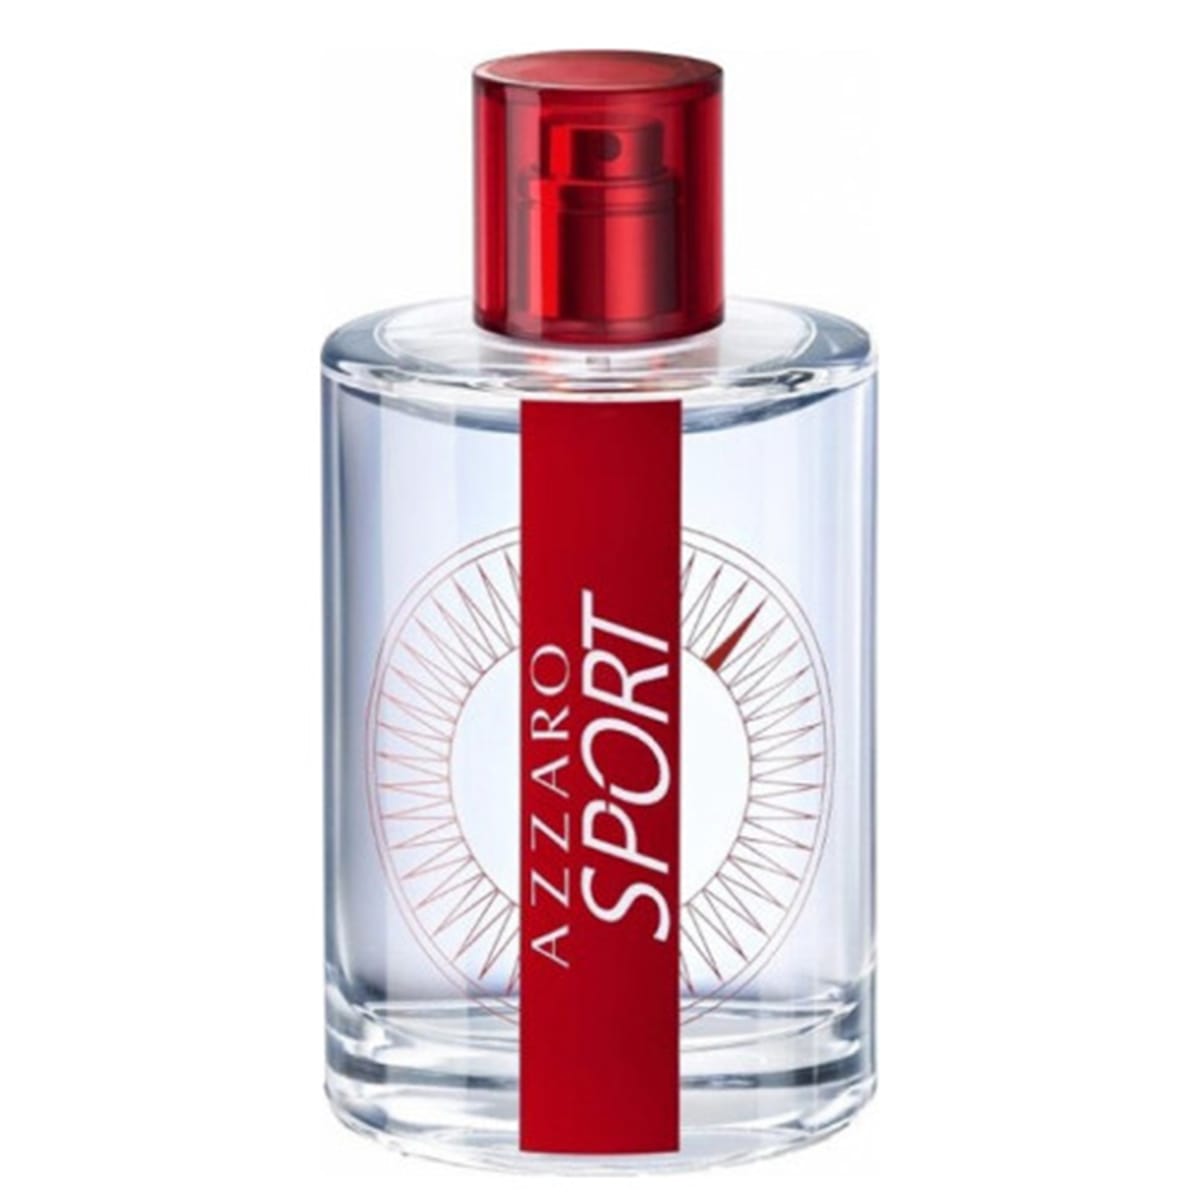 Azzaro Sport Edt Perfume For Men 100ml - Allurebeautypk